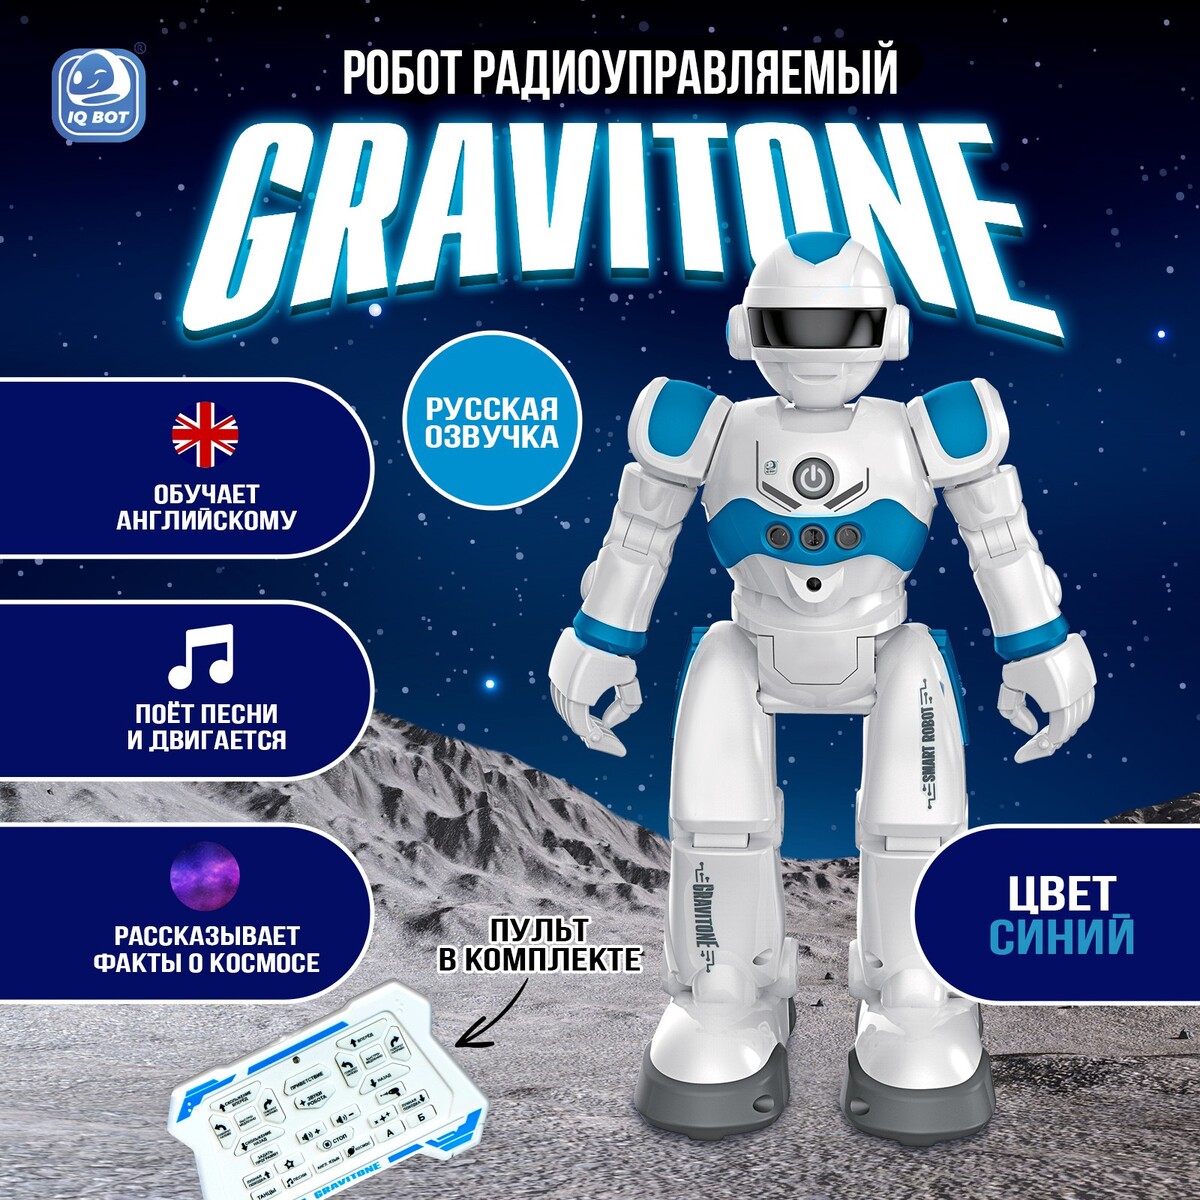 Робот радиоуправляемый iq bot gravitone, русское озвучивание, цвет синий робот радиоуправляемый iq bot gravitone русское озвучивание синий